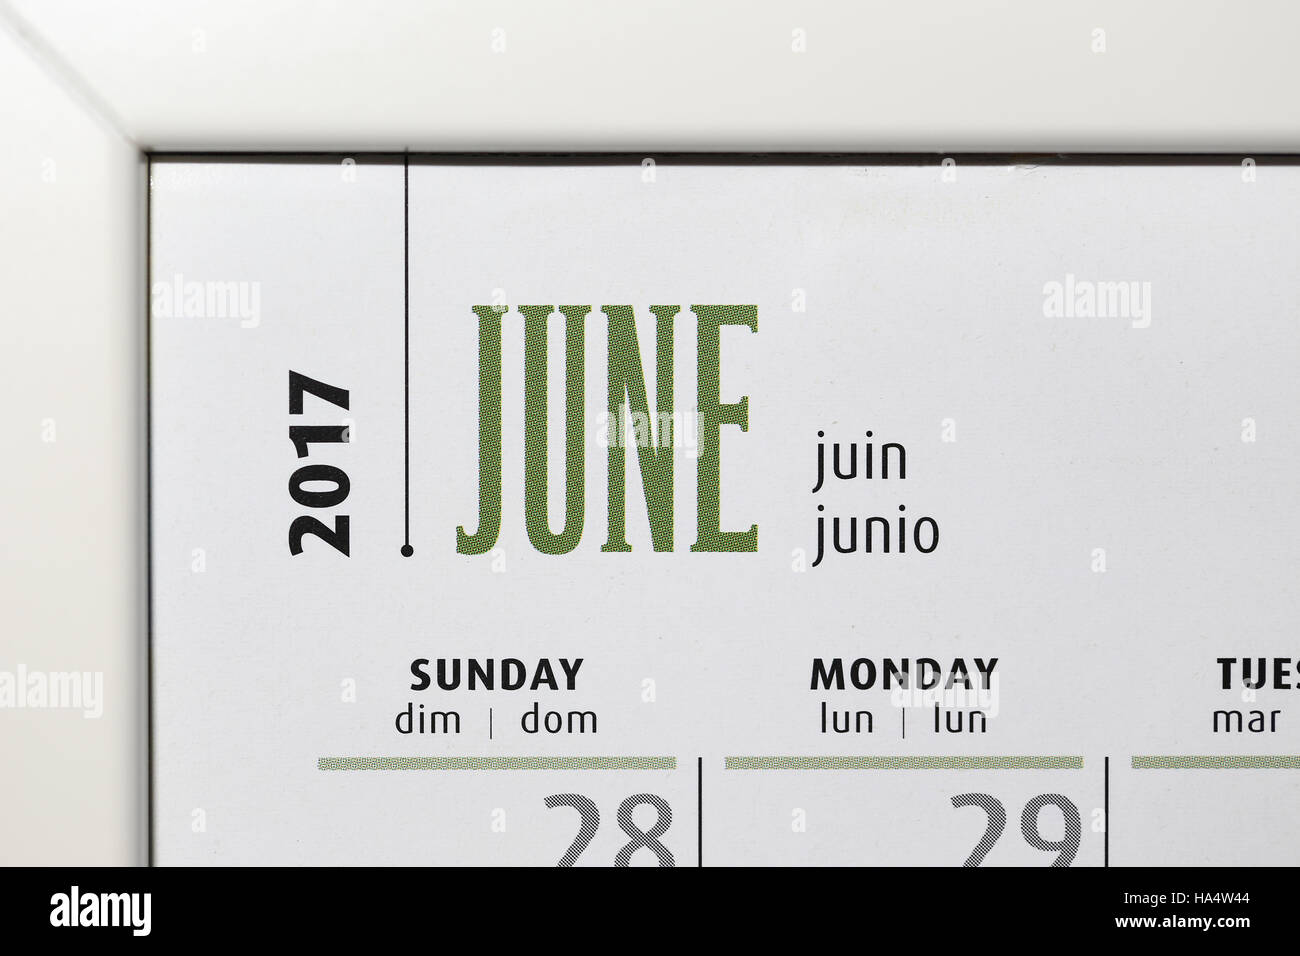 Fermer le calendrier de juin 2017 à l'intérieur de cadre blanc Banque D'Images